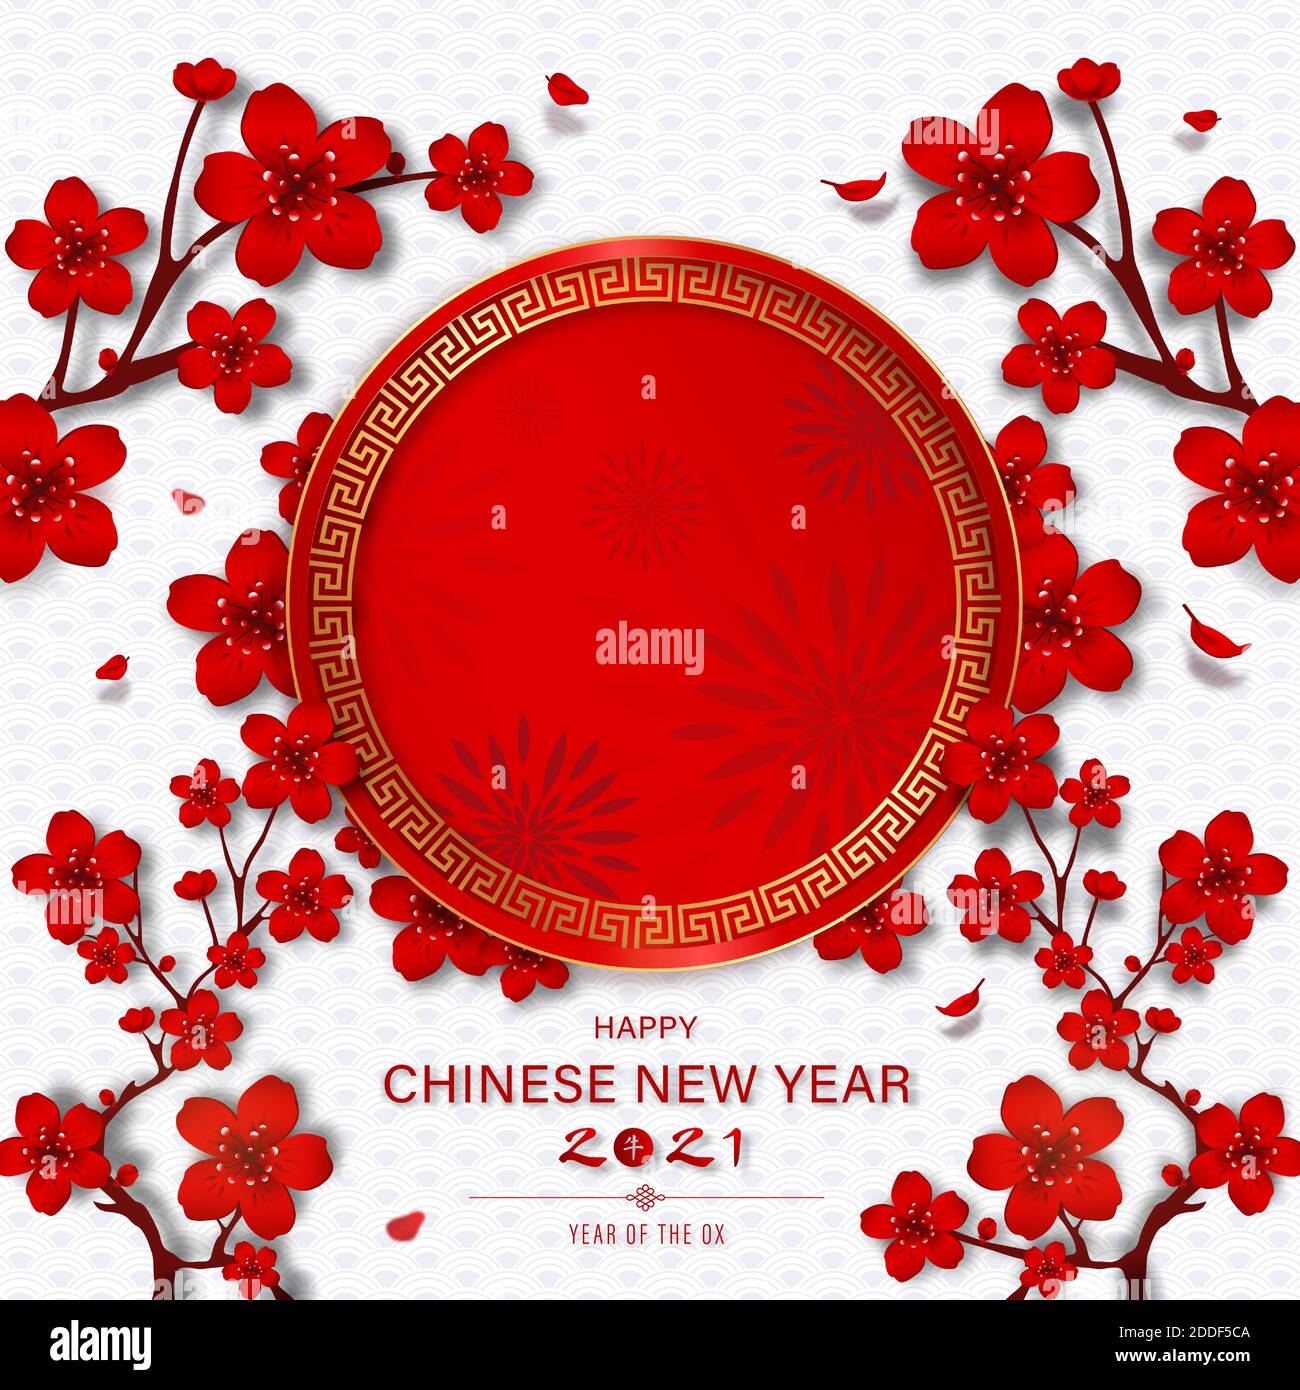 Le texte du nouvel an chinois heureux et la lettre chinoise signifie ox pour l'année 2021 avec un cercle rouge pour le texte arrière-plan de style oriental Illustration de Vecteur